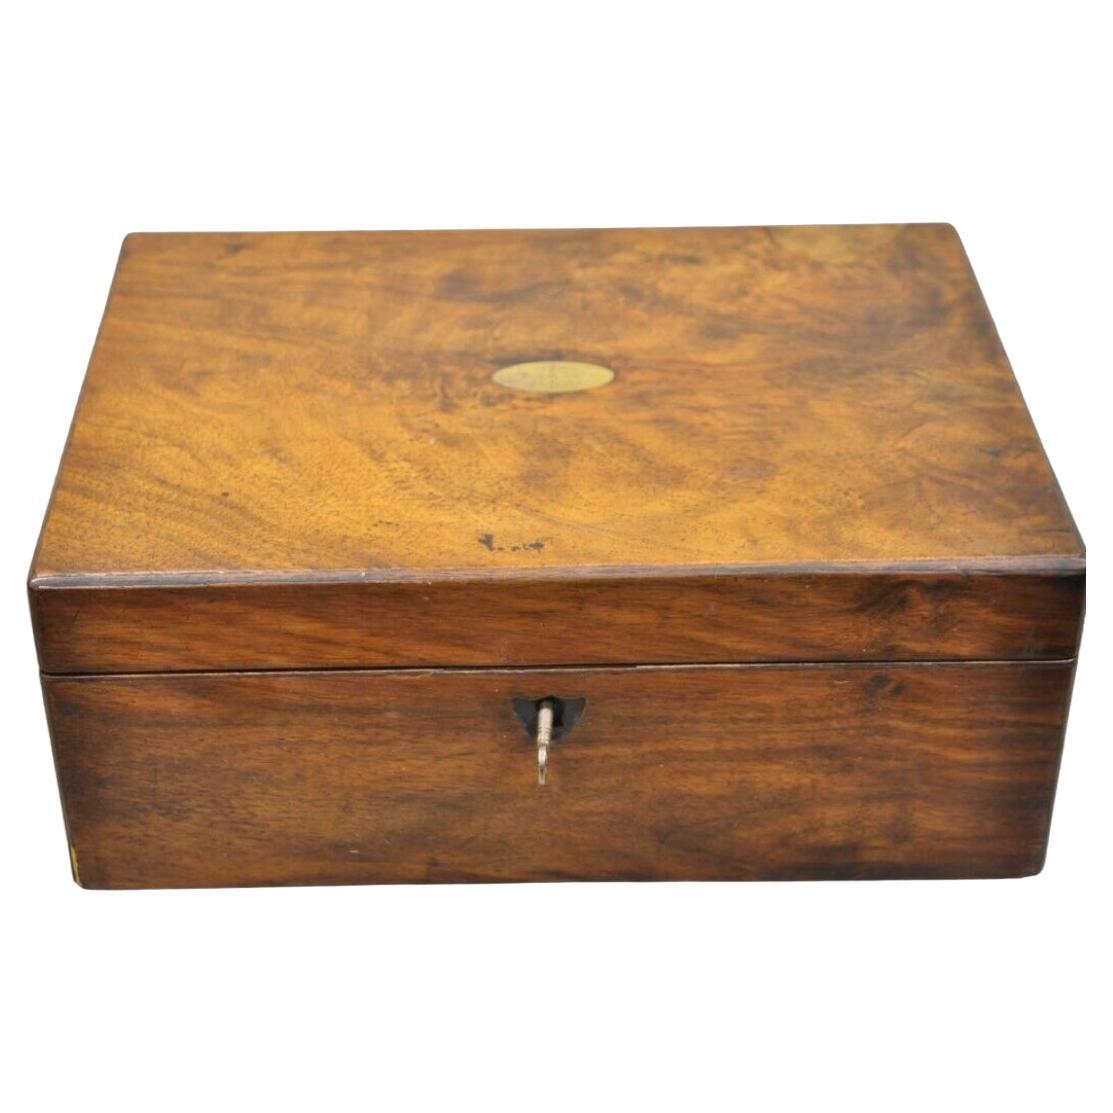 Ancienne petite boîte de bureau en ronce de noyer de l'époque victorienne anglaise avec intérieur aménagé